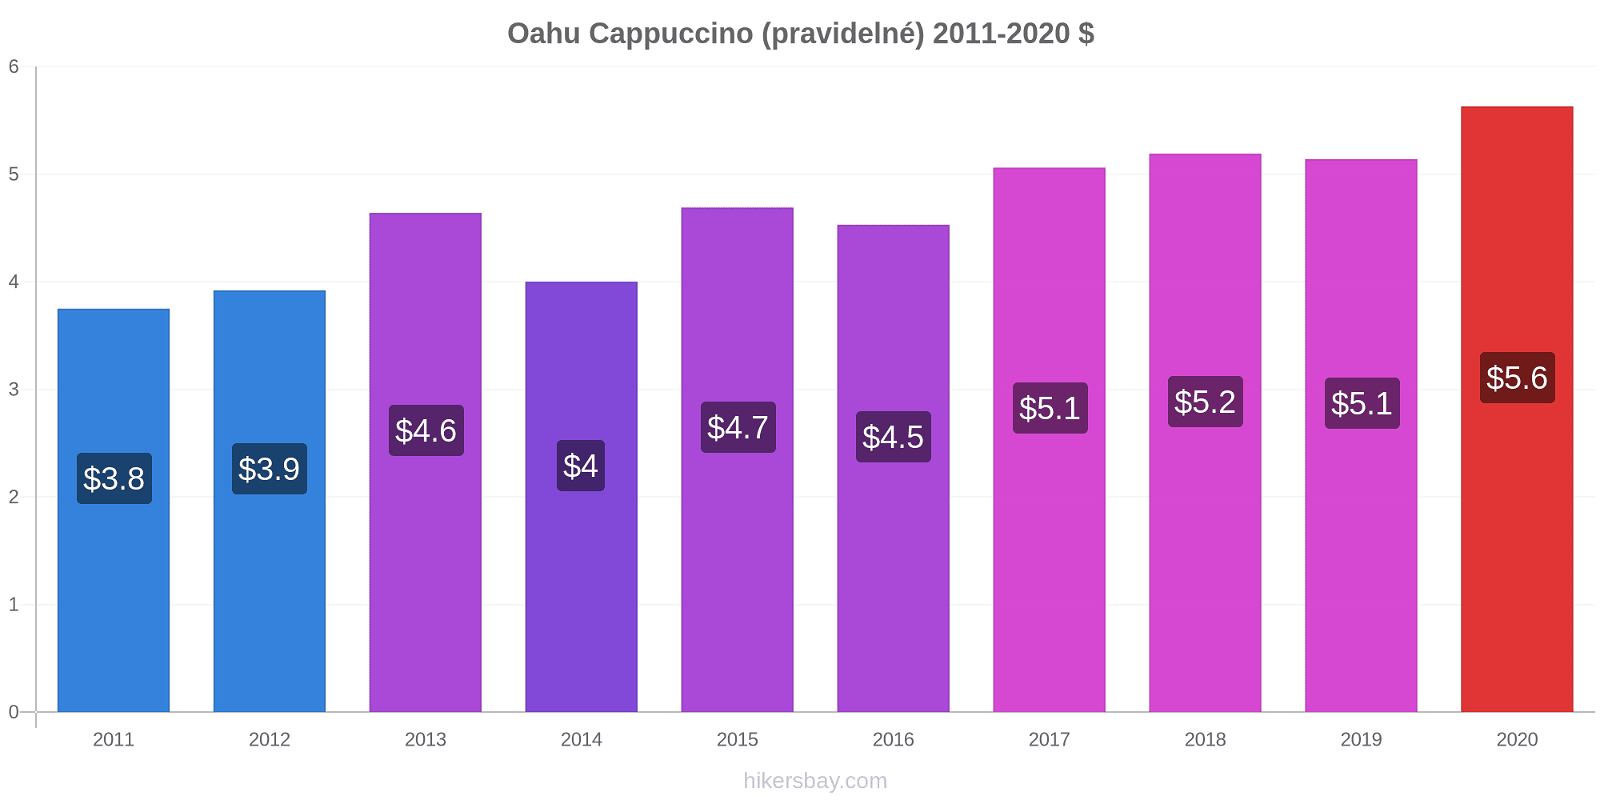 Oahu změny cen Cappuccino (pravidelné) hikersbay.com